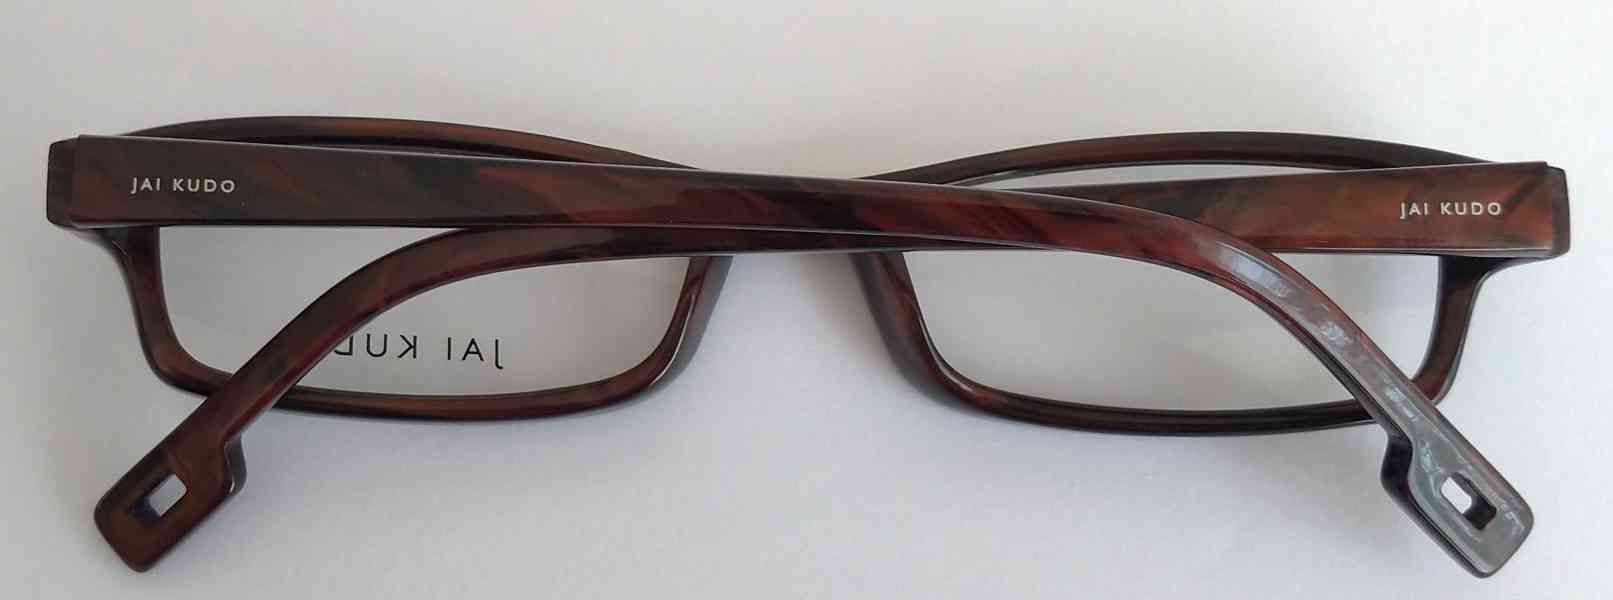 JAI KUDO 1733 P03 dámské brýlové obruby 50-18-135 MOC:2600Kč - foto 9